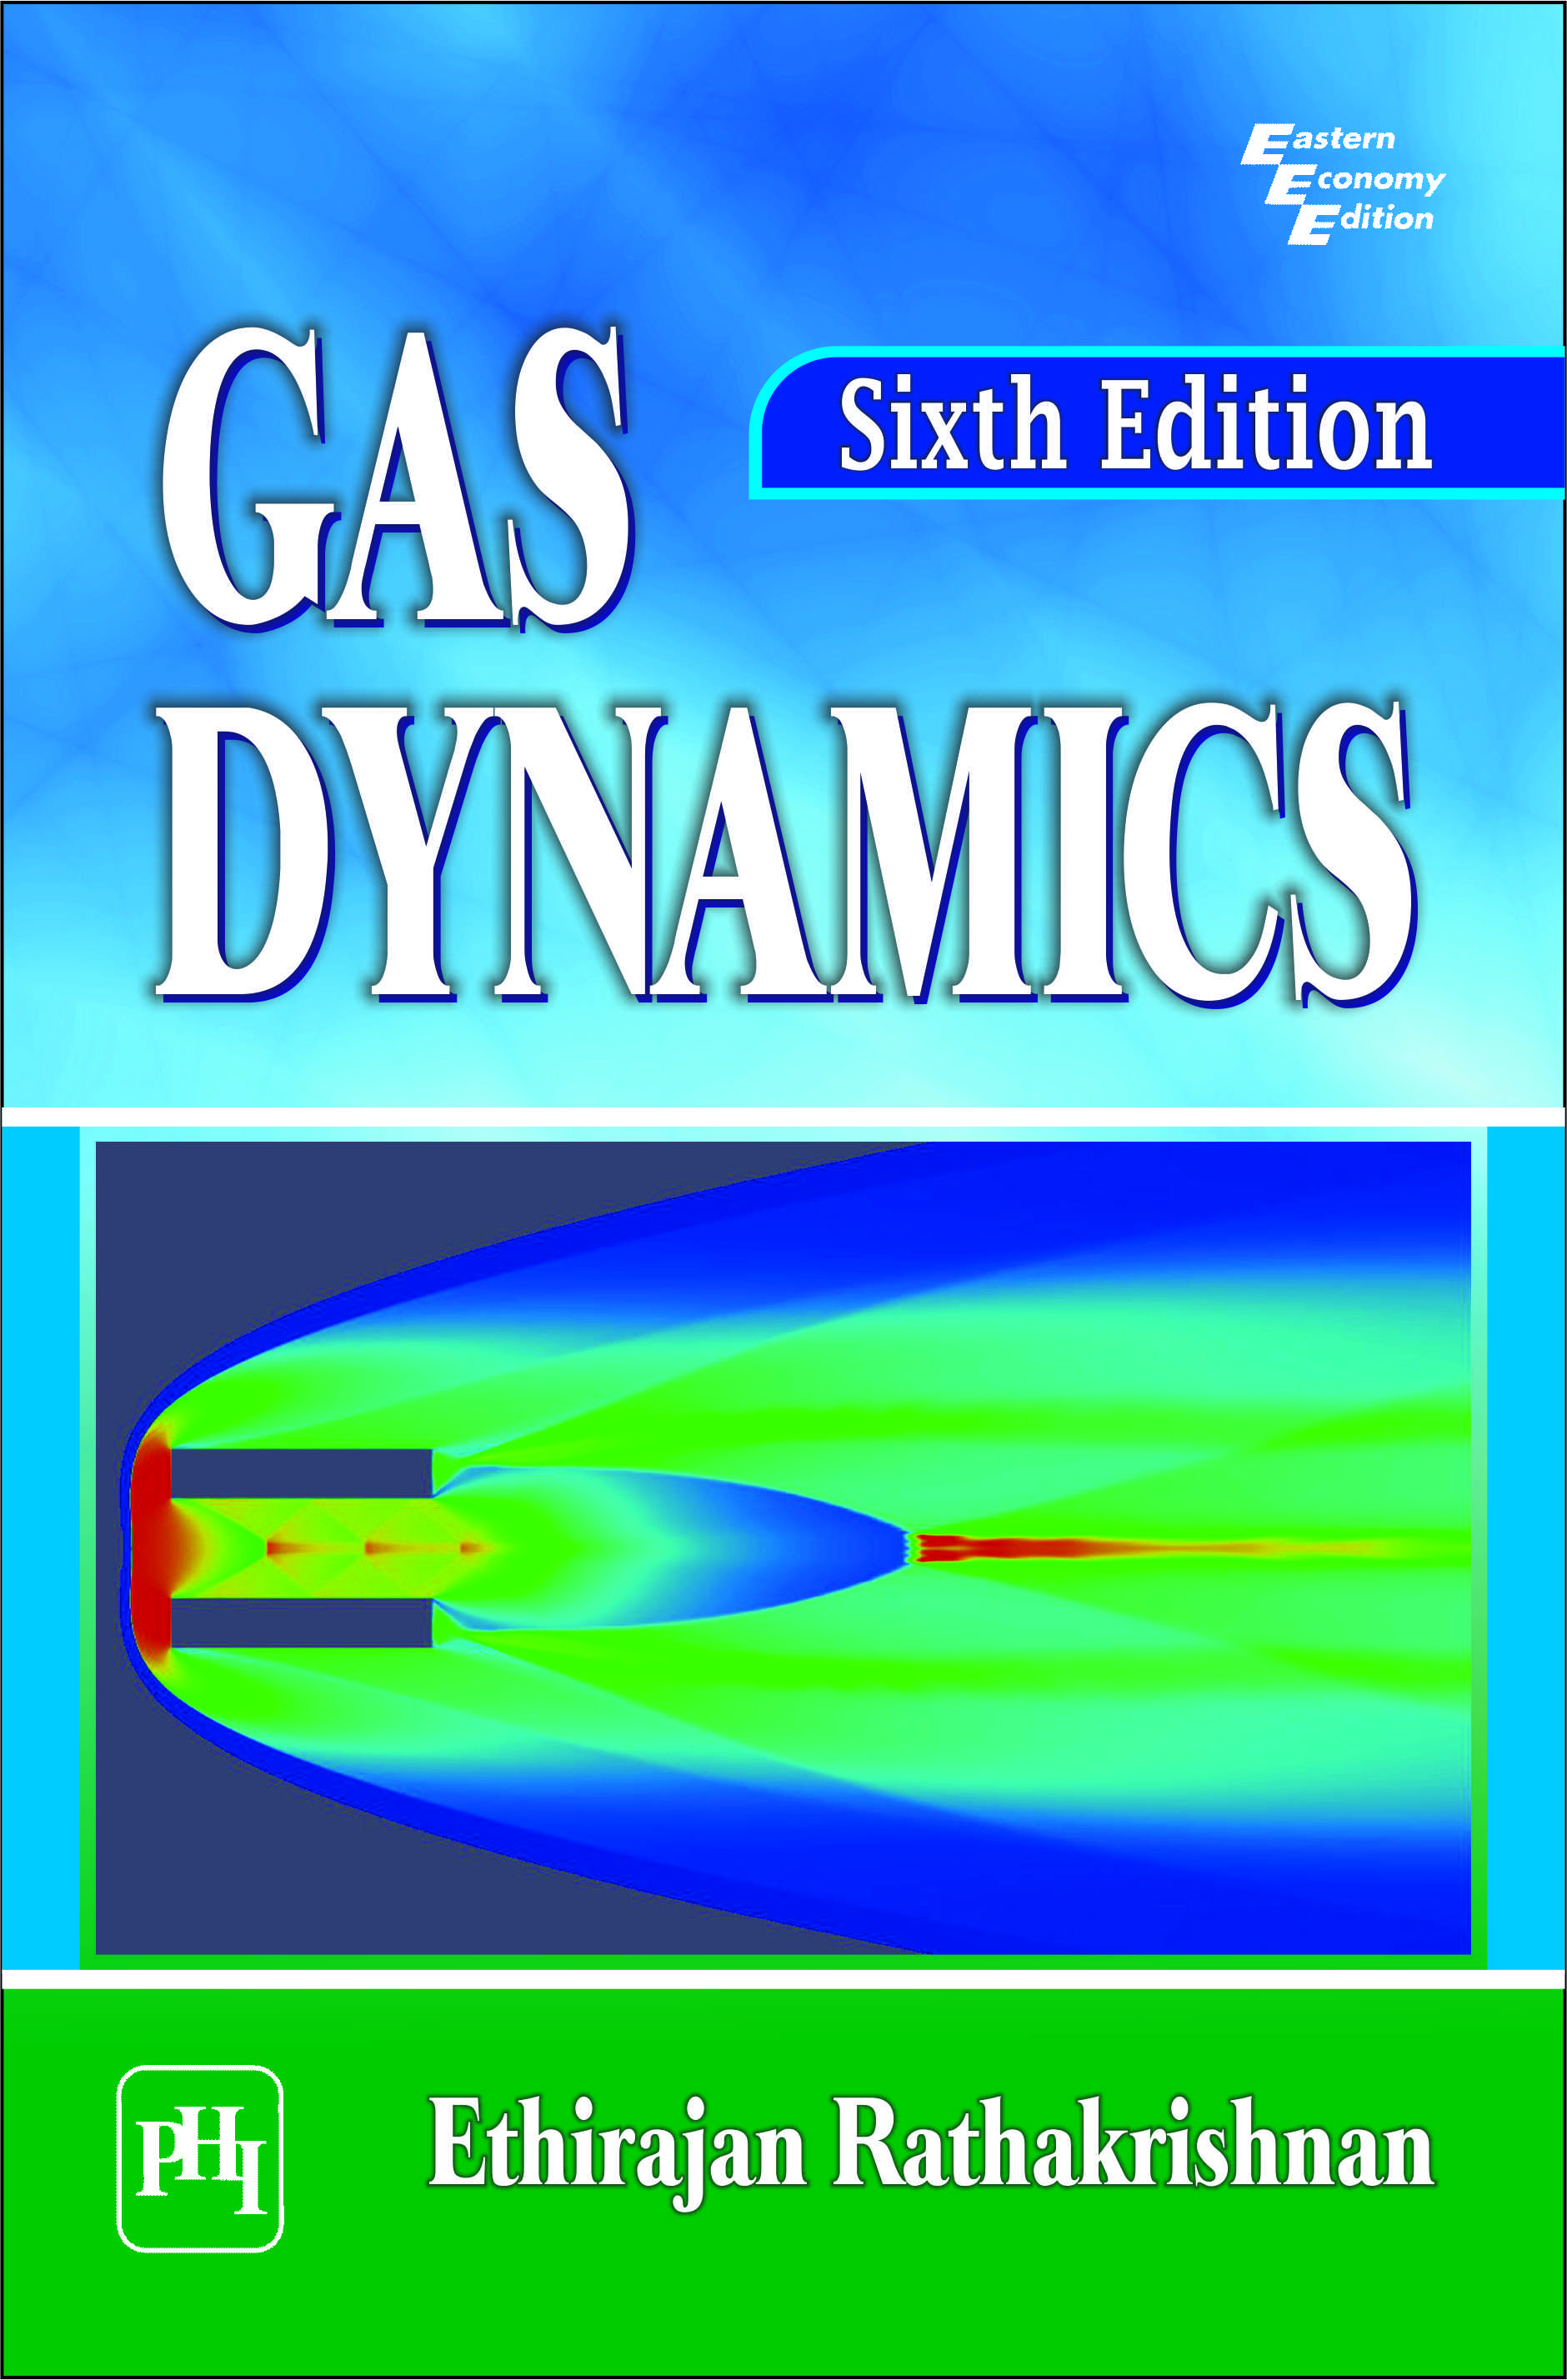 Gas Dynamics By Radhakrishnan Pdf Free 37